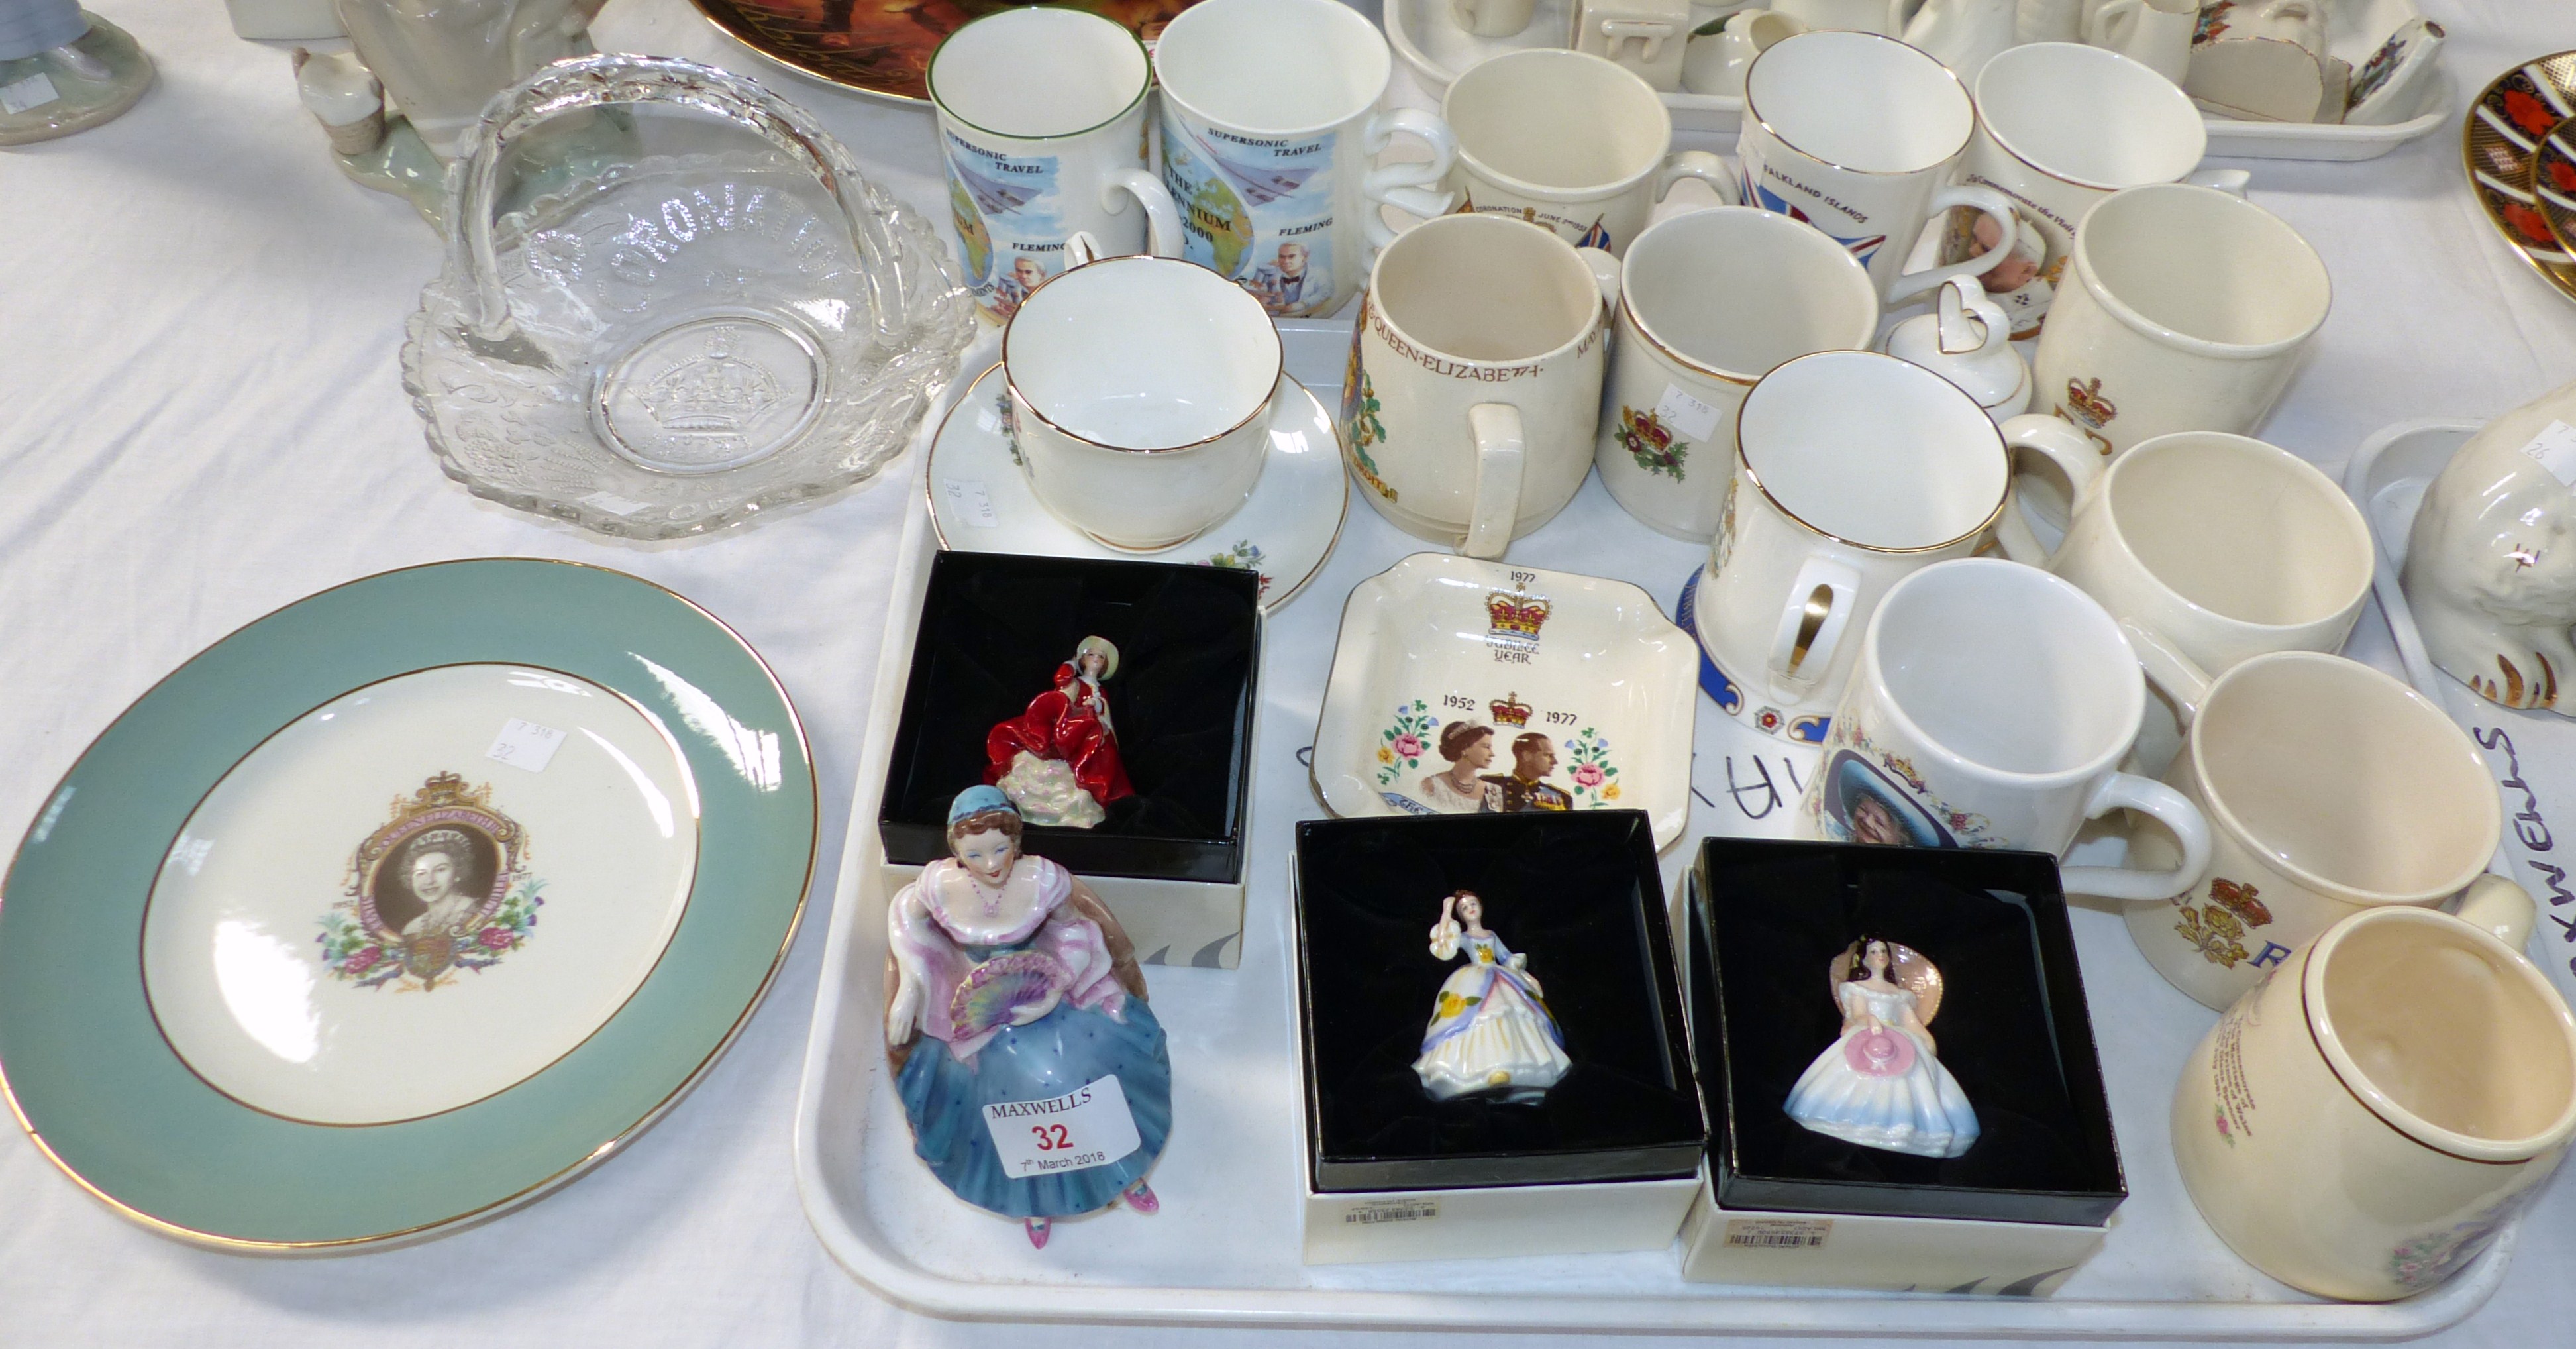 3 Royal Doulton miniature ladies; a Coalport figure; a selection of Royal souvenirs